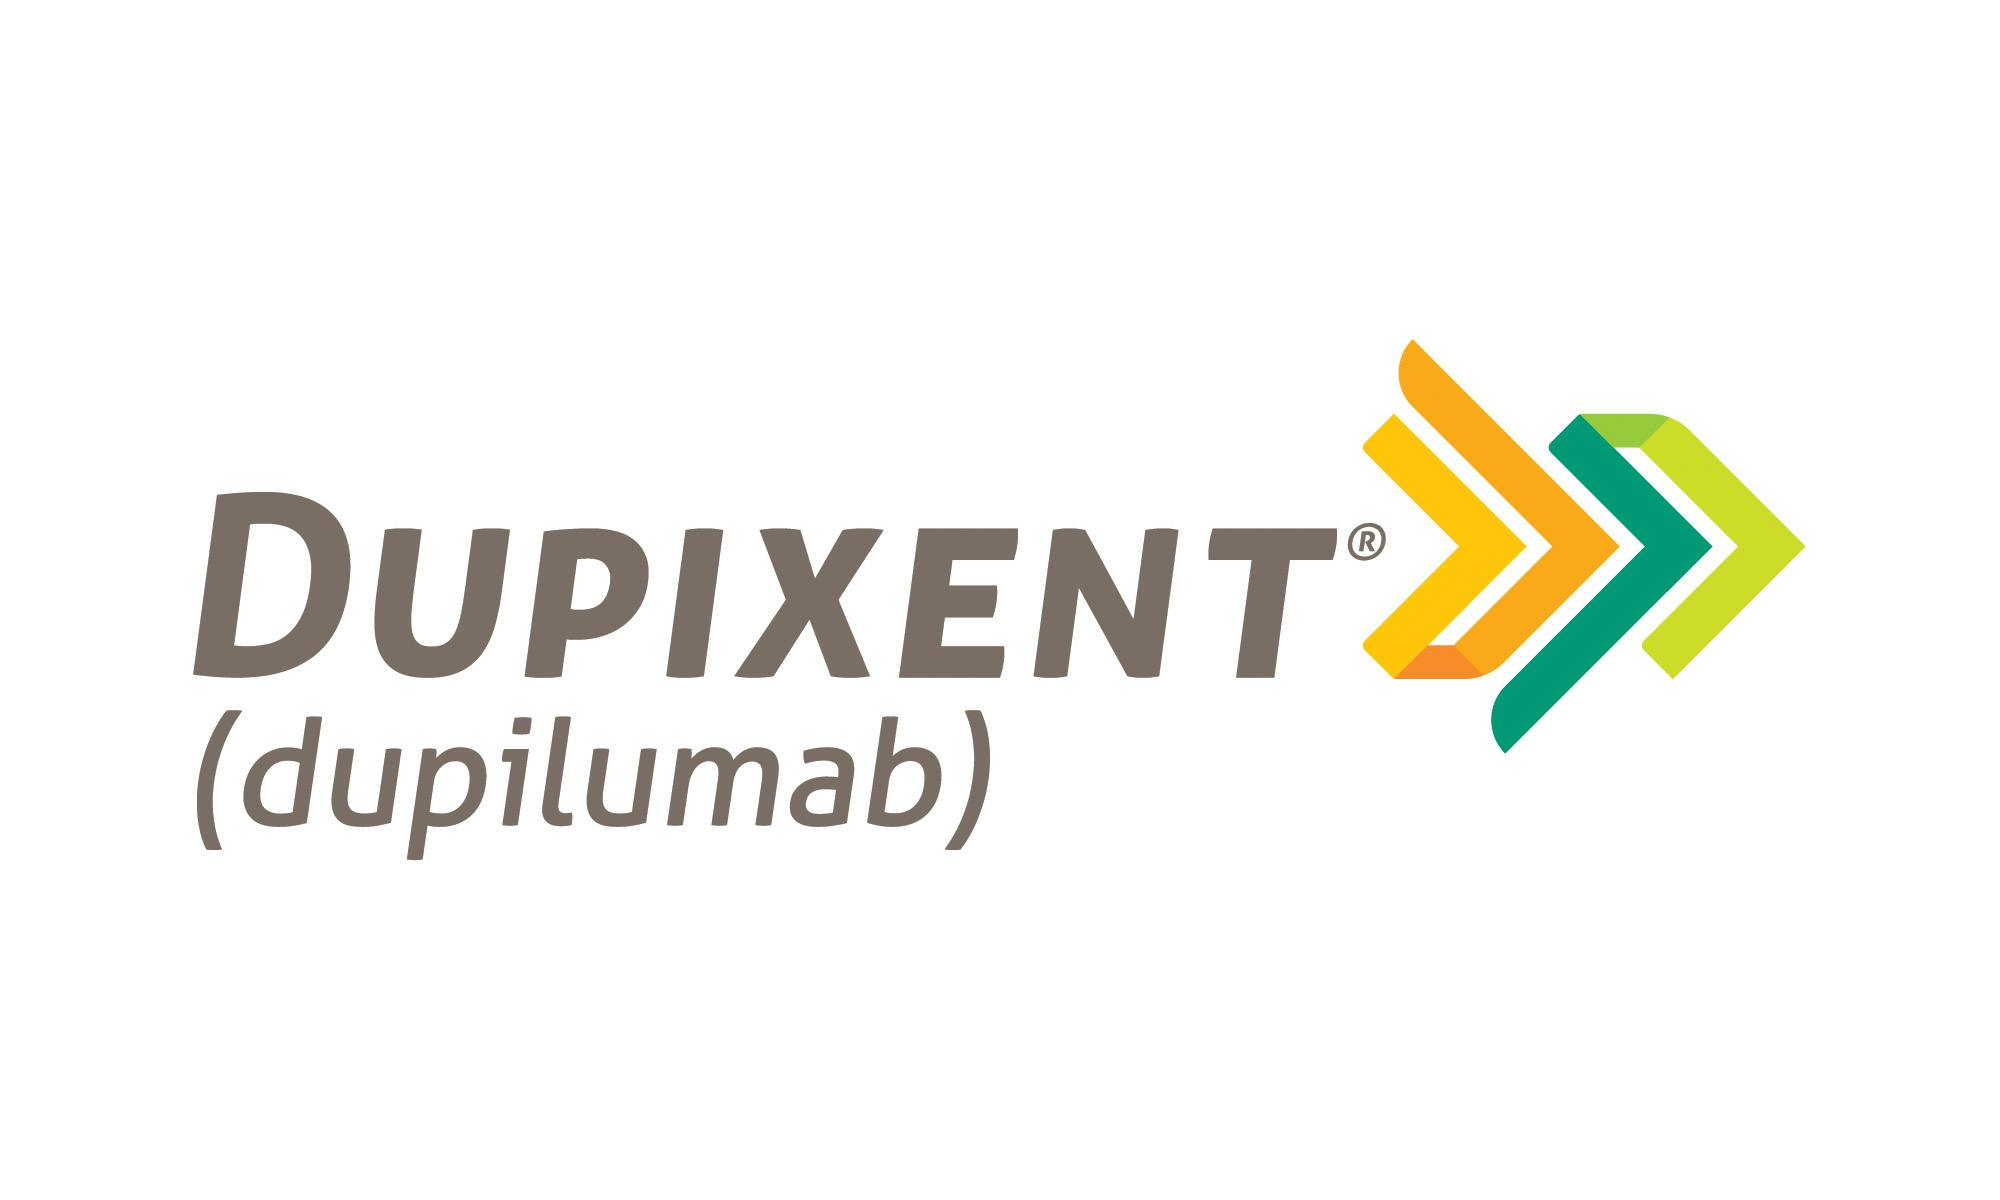 FDA批准了新的Dupixent预填充笔，旨在支持更方便的自我管理形象